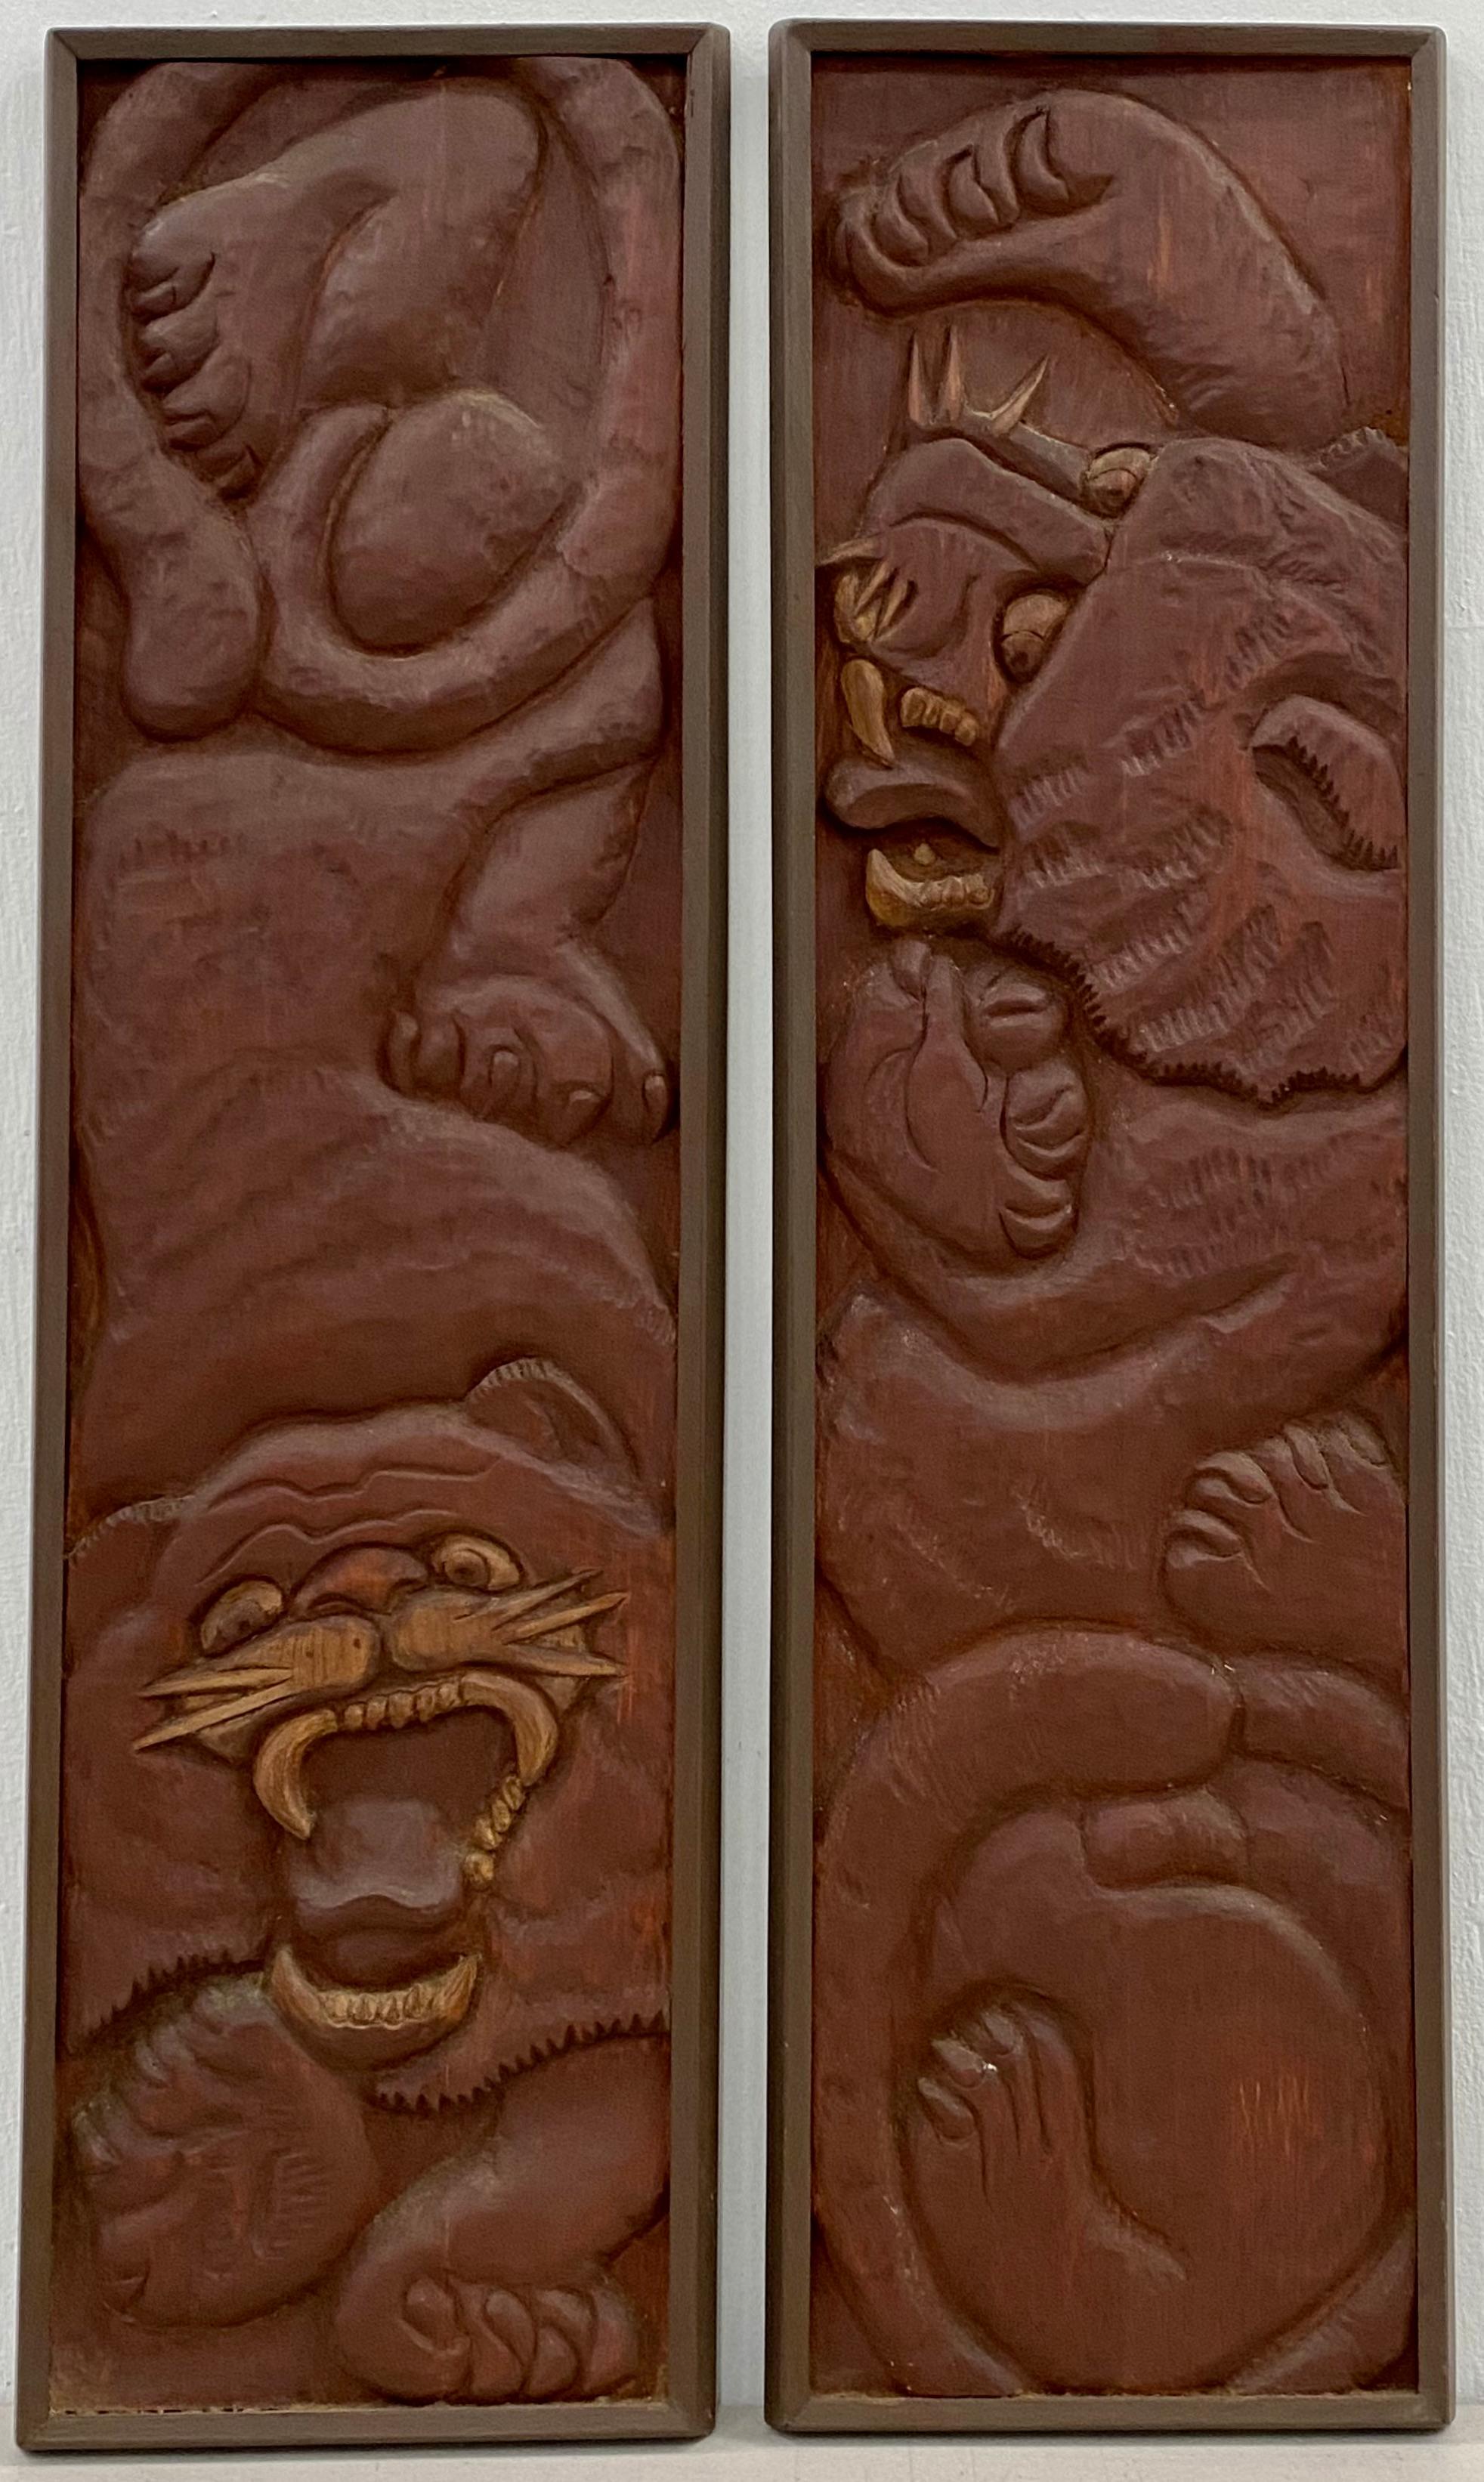 Richard Whalen (Amerikaner, 1926-2009) "Zwei Tiger" Original-Holz-Wandskulpturen um 1970

Handgeschnitzte Tiger in Relief 

Jedes Stück misst 8" breit x 30,75" hoch

Vorzeichenlos

Richard Whalen war ein amerikanischer Bildhauer und